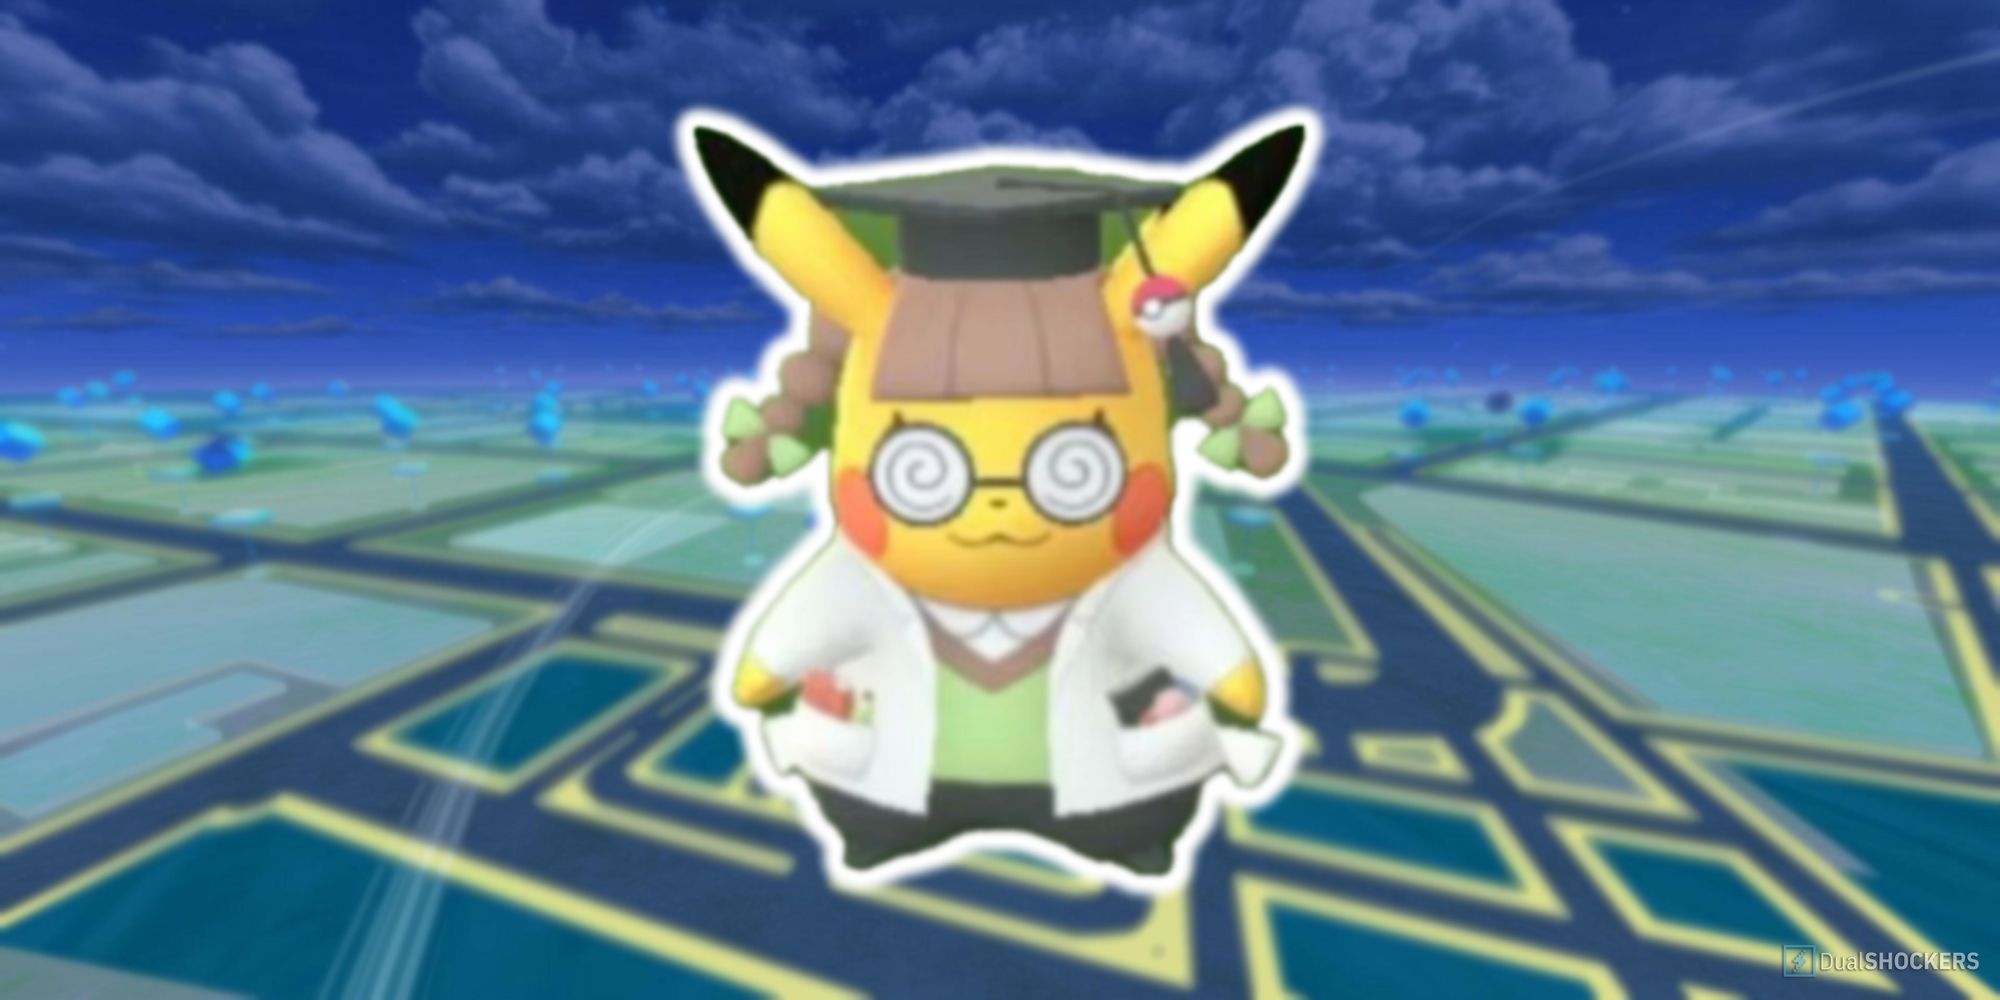 Pikachu Ph.D. in Pokemon GO.